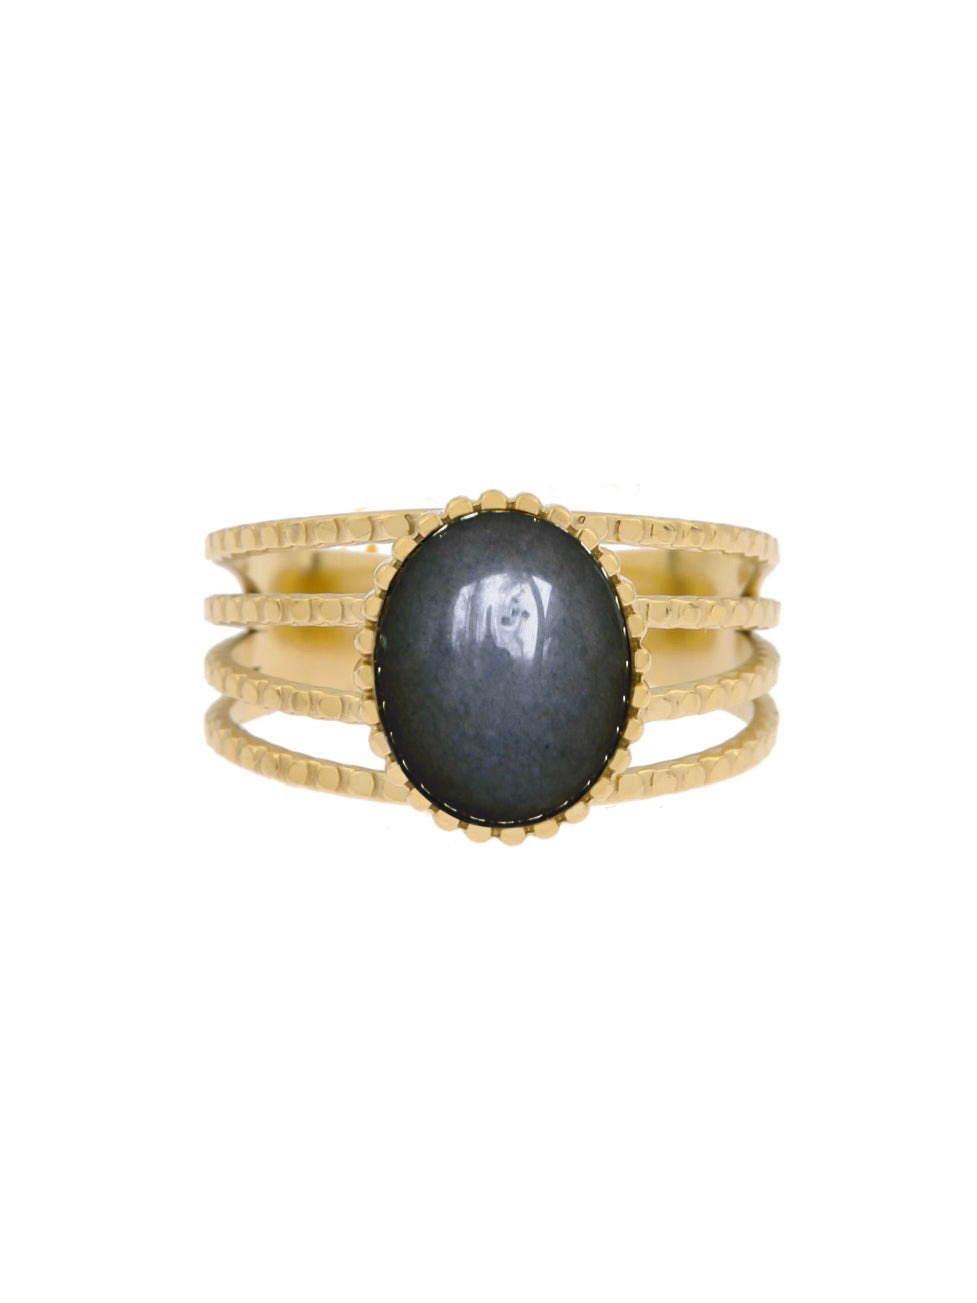 4 Delige Ring met Ovale Steen zwart - LEEF mode en accessoires